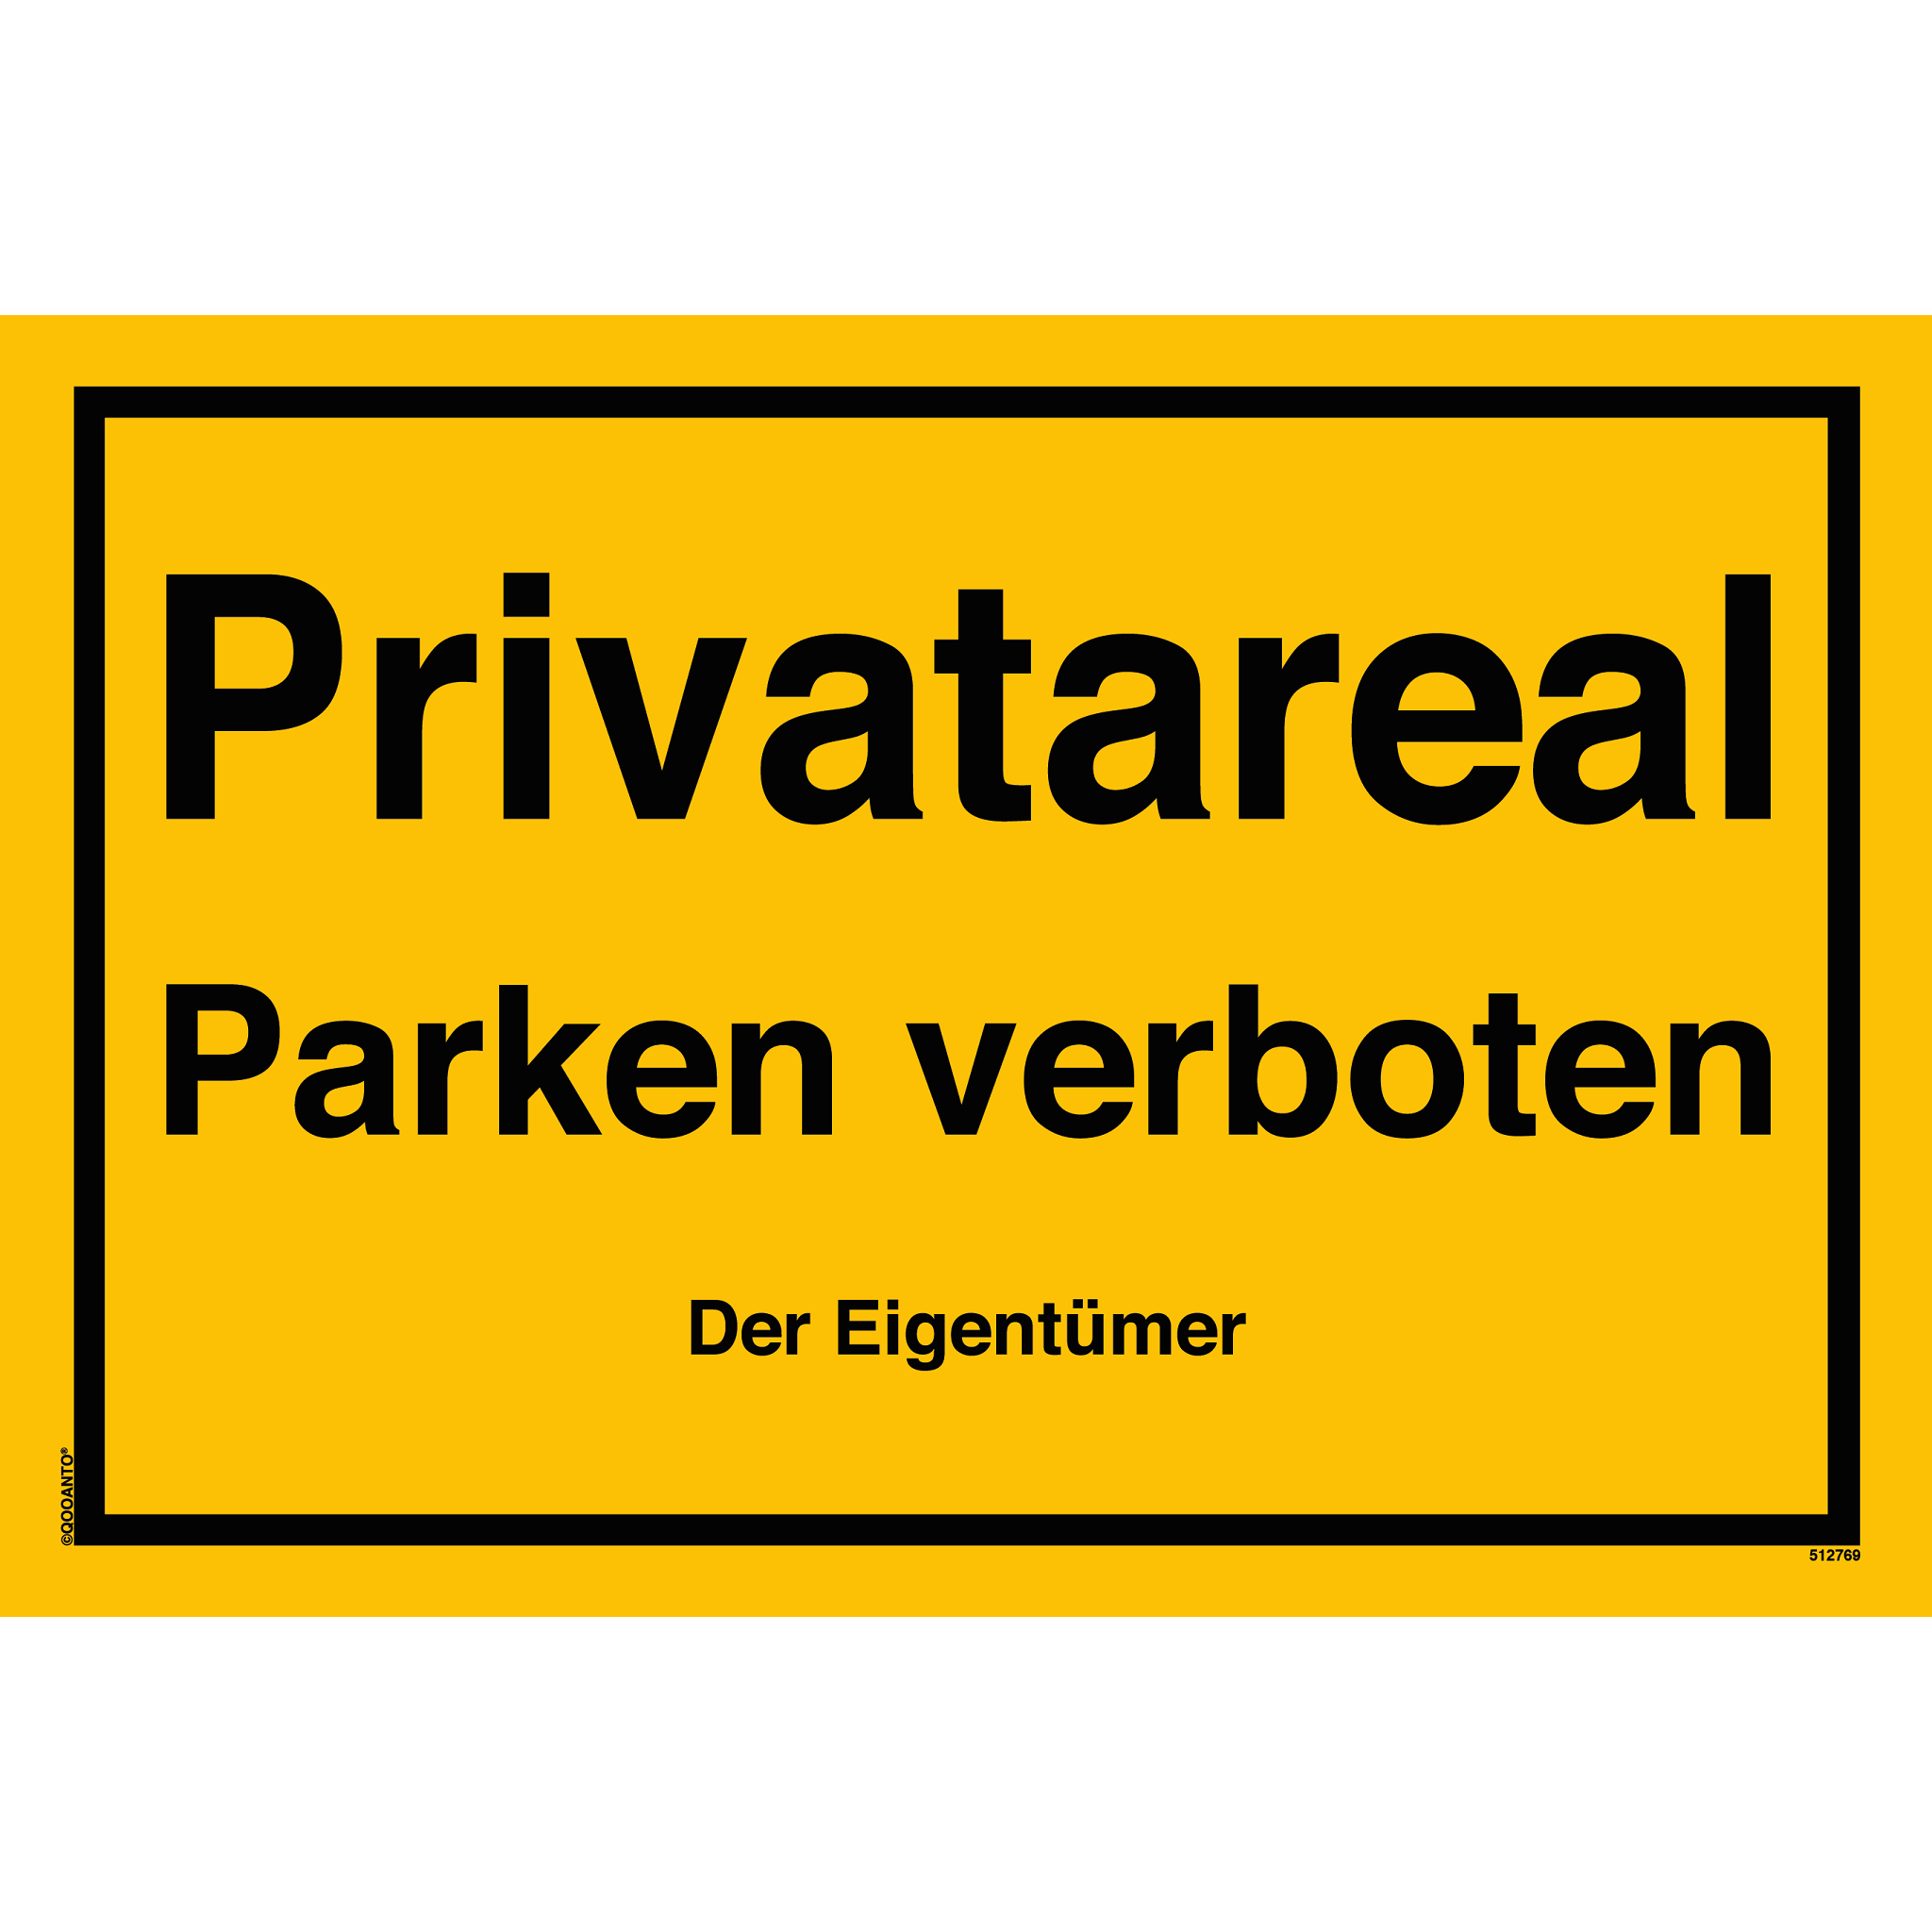 Privatareal Parken verboten Der Eigentümer, gelb, Schild